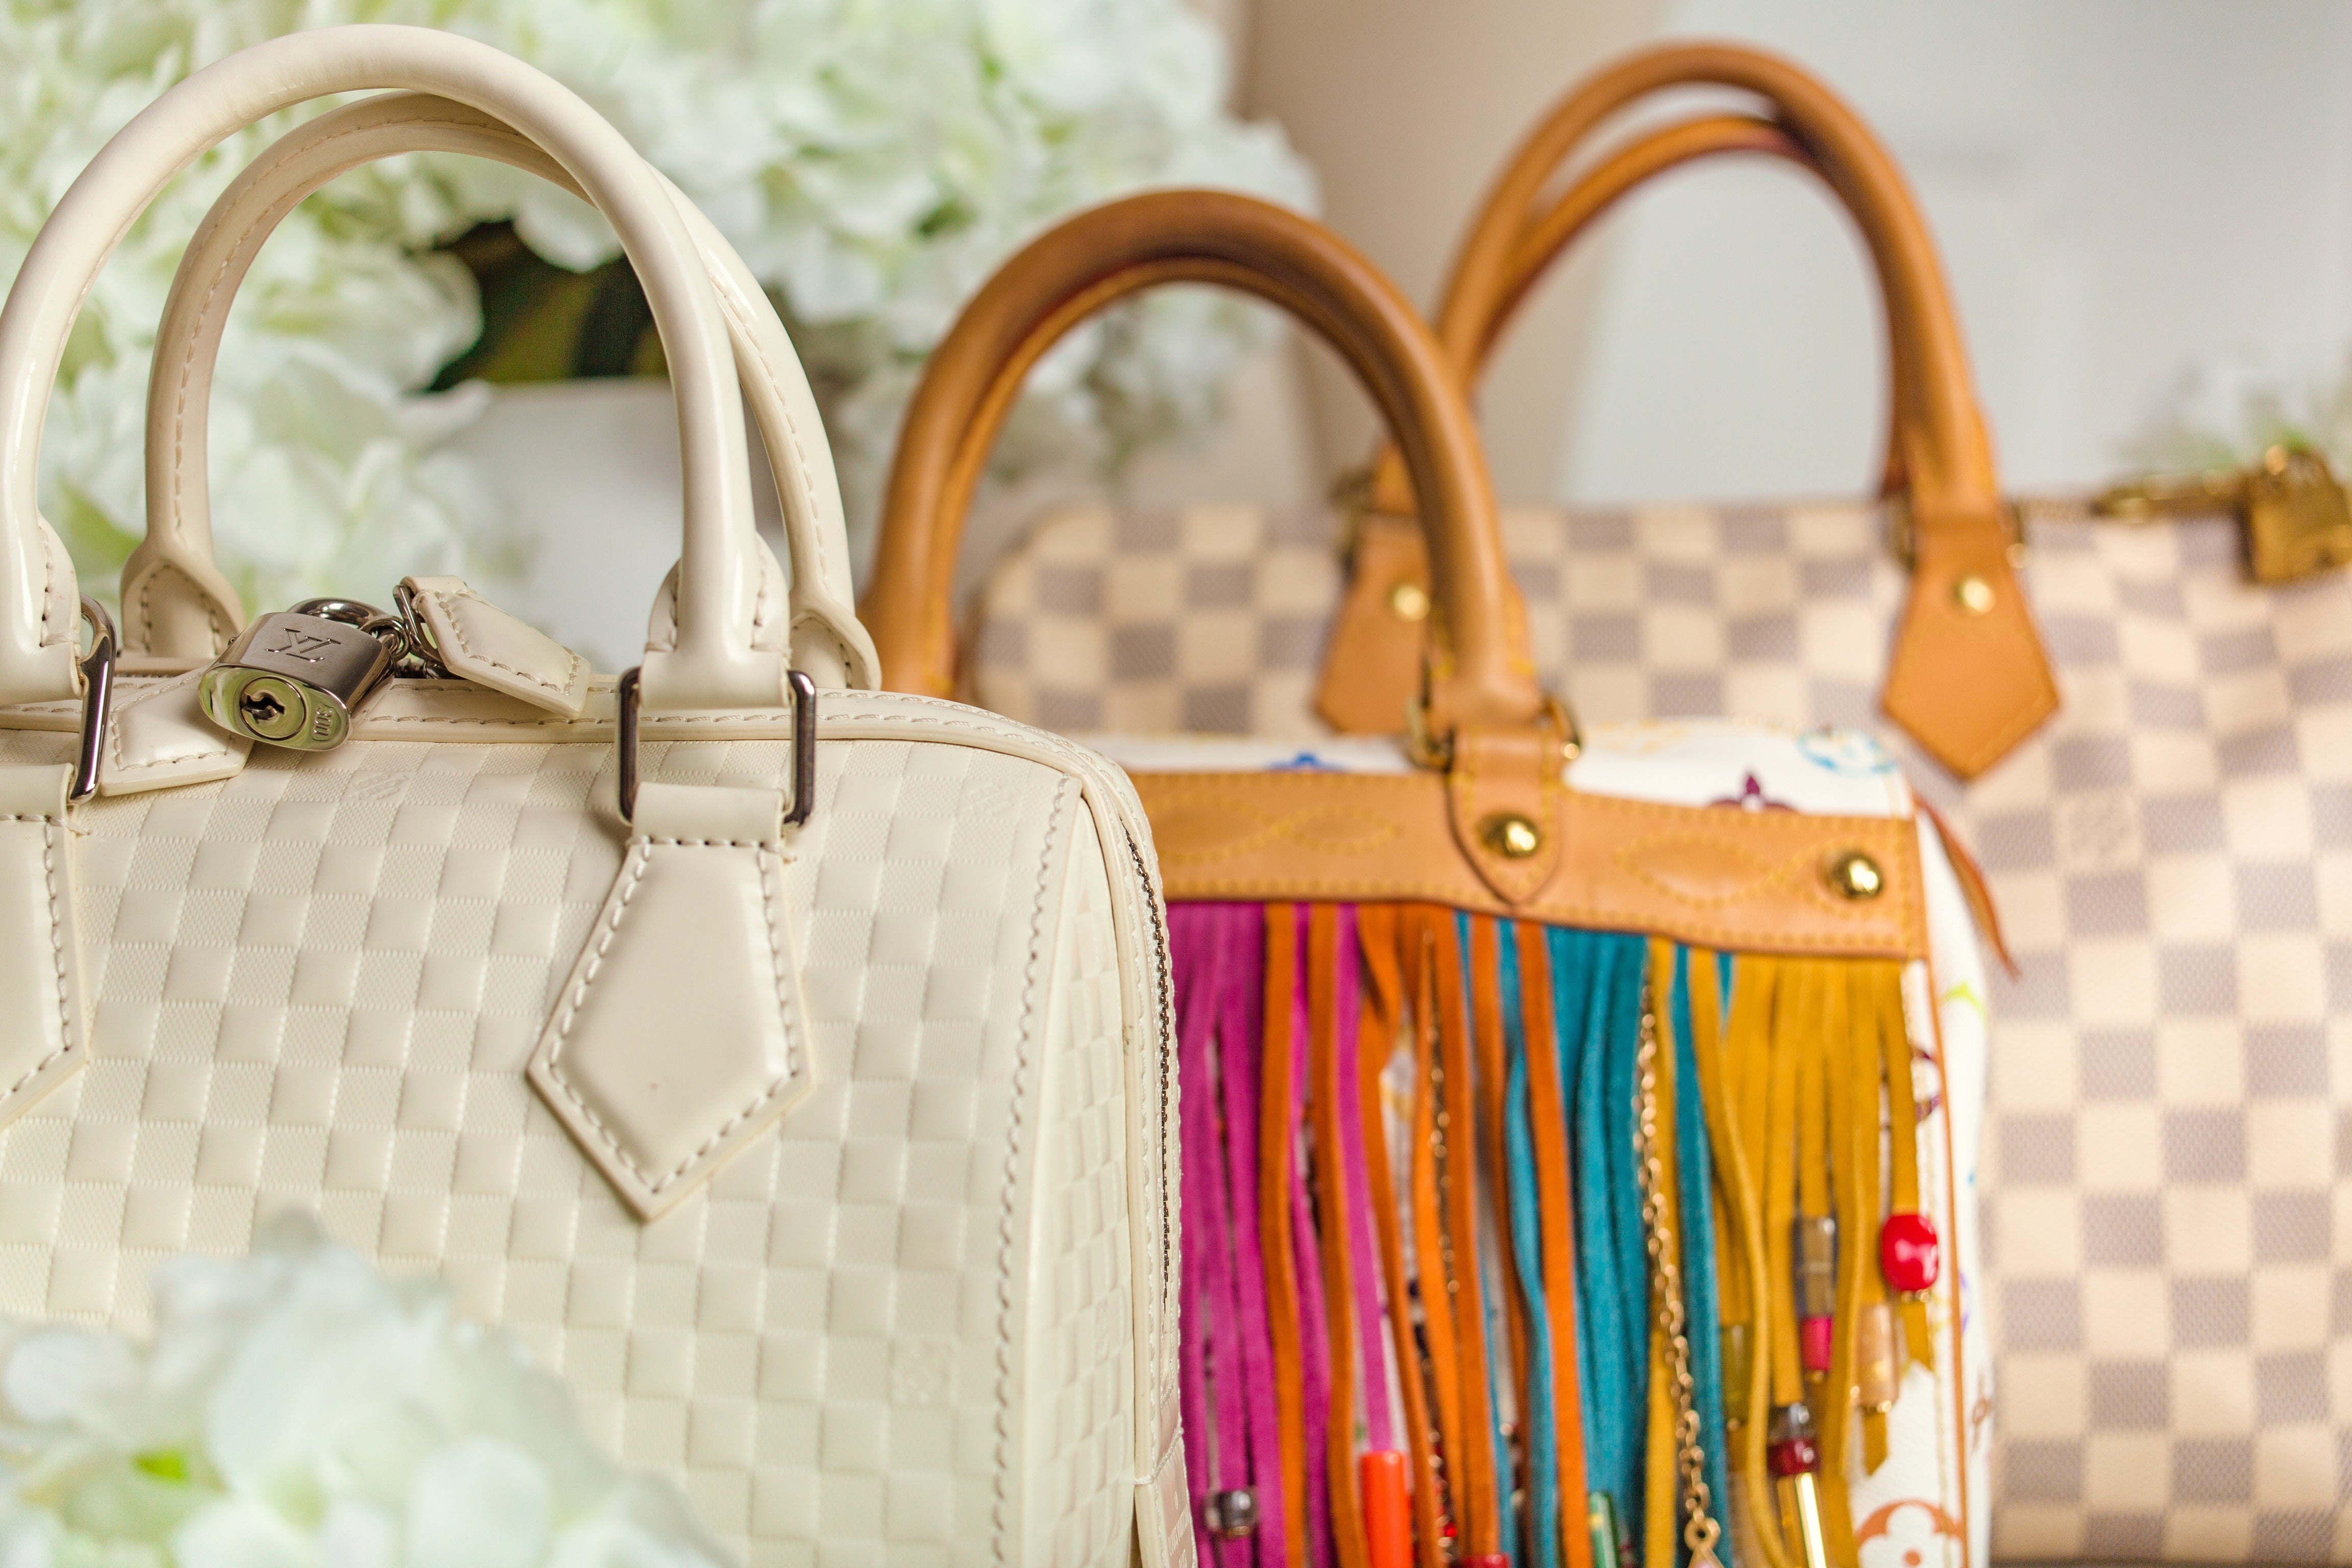 Authenticating luxury handbags made easy with OpenLuxury - OpenLuxury